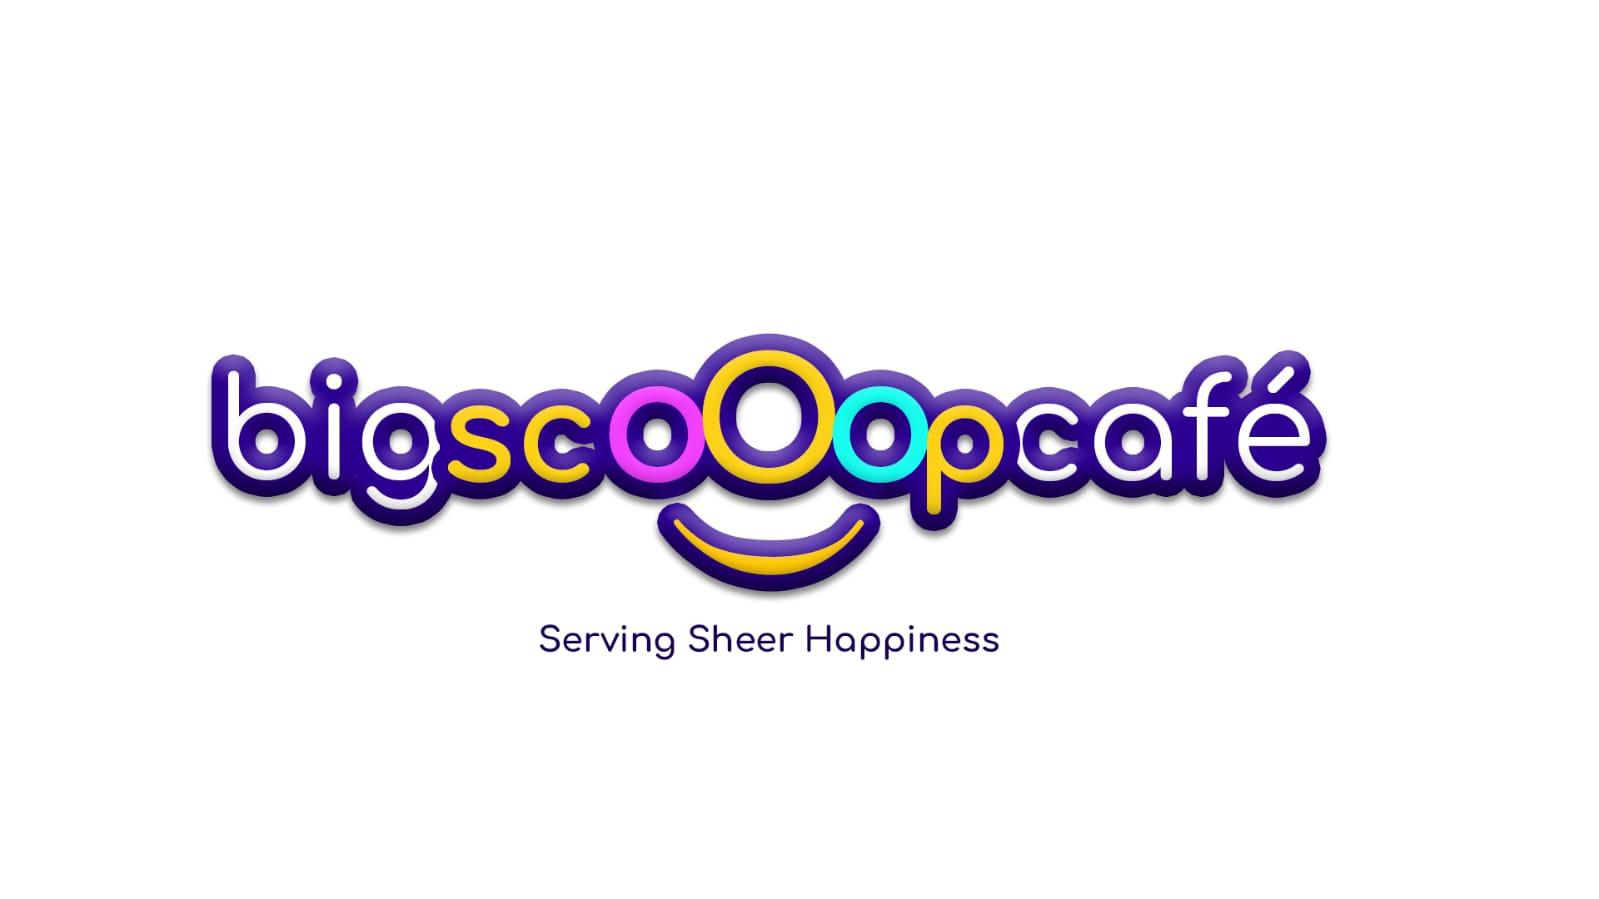 Big scoop cafe - Ashram Road